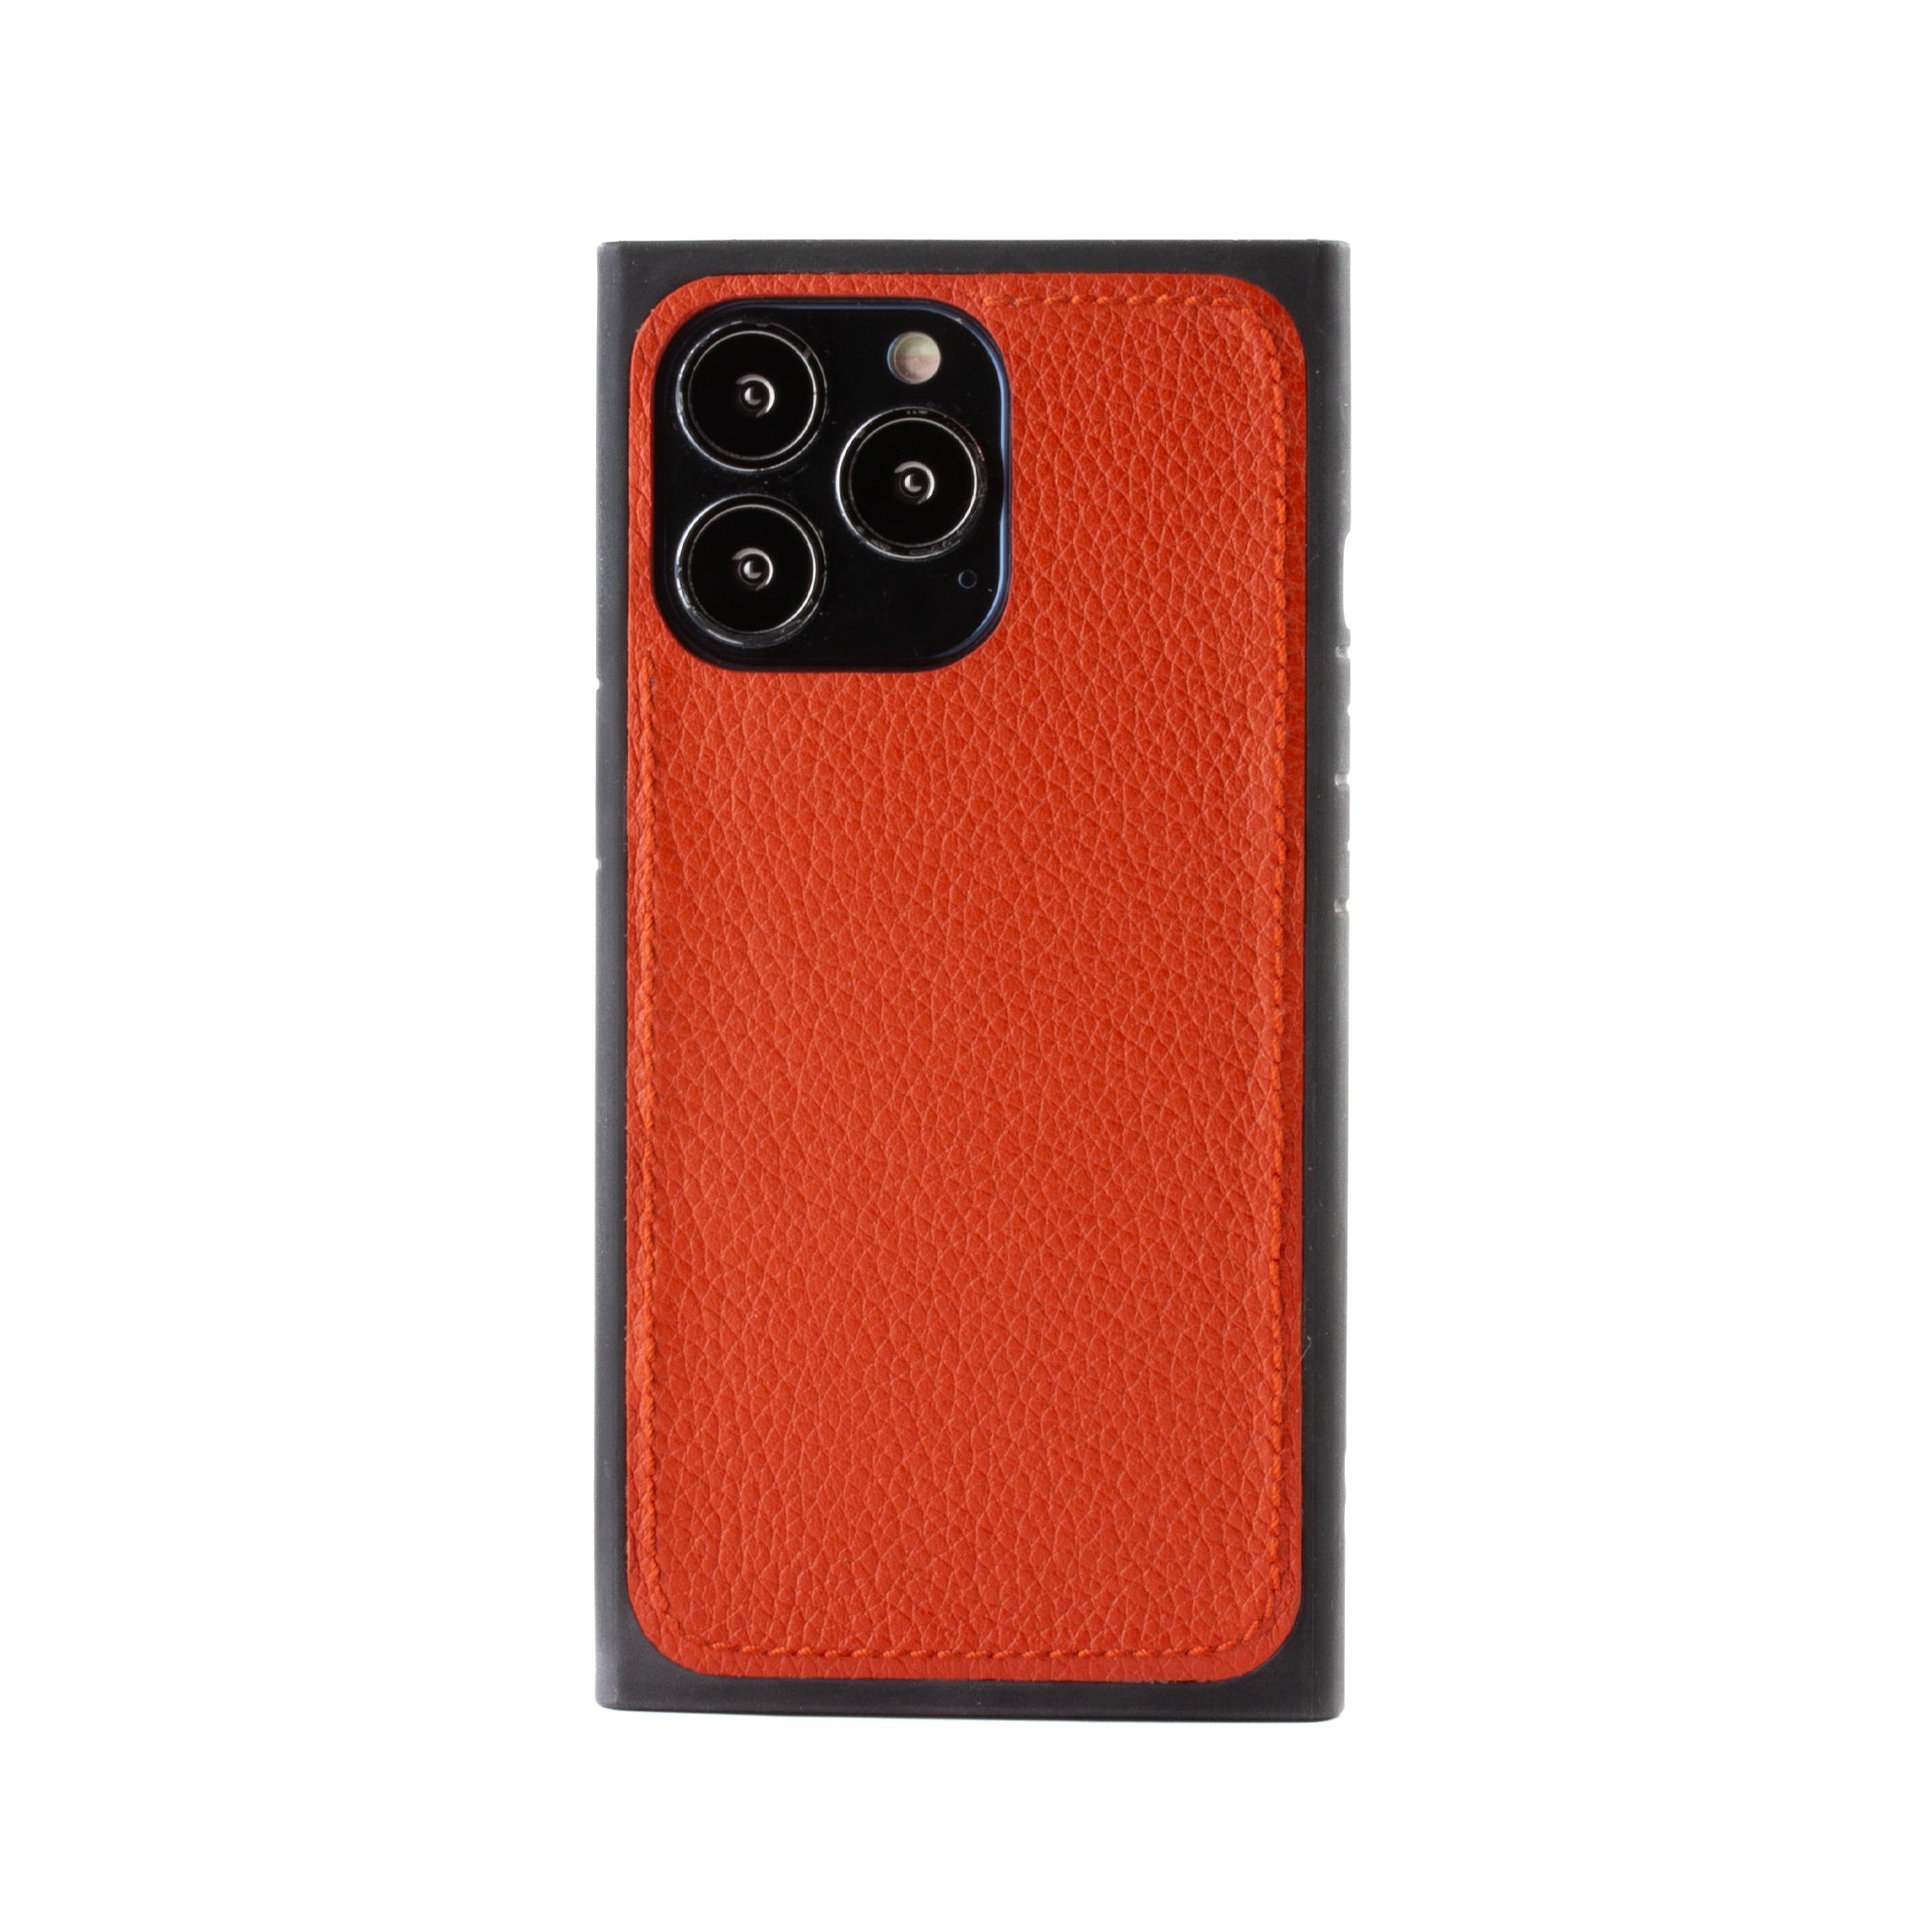 Vente exclusive - Coque "Square case" cuir pour iPhone 13 Pro - Buffle Orange